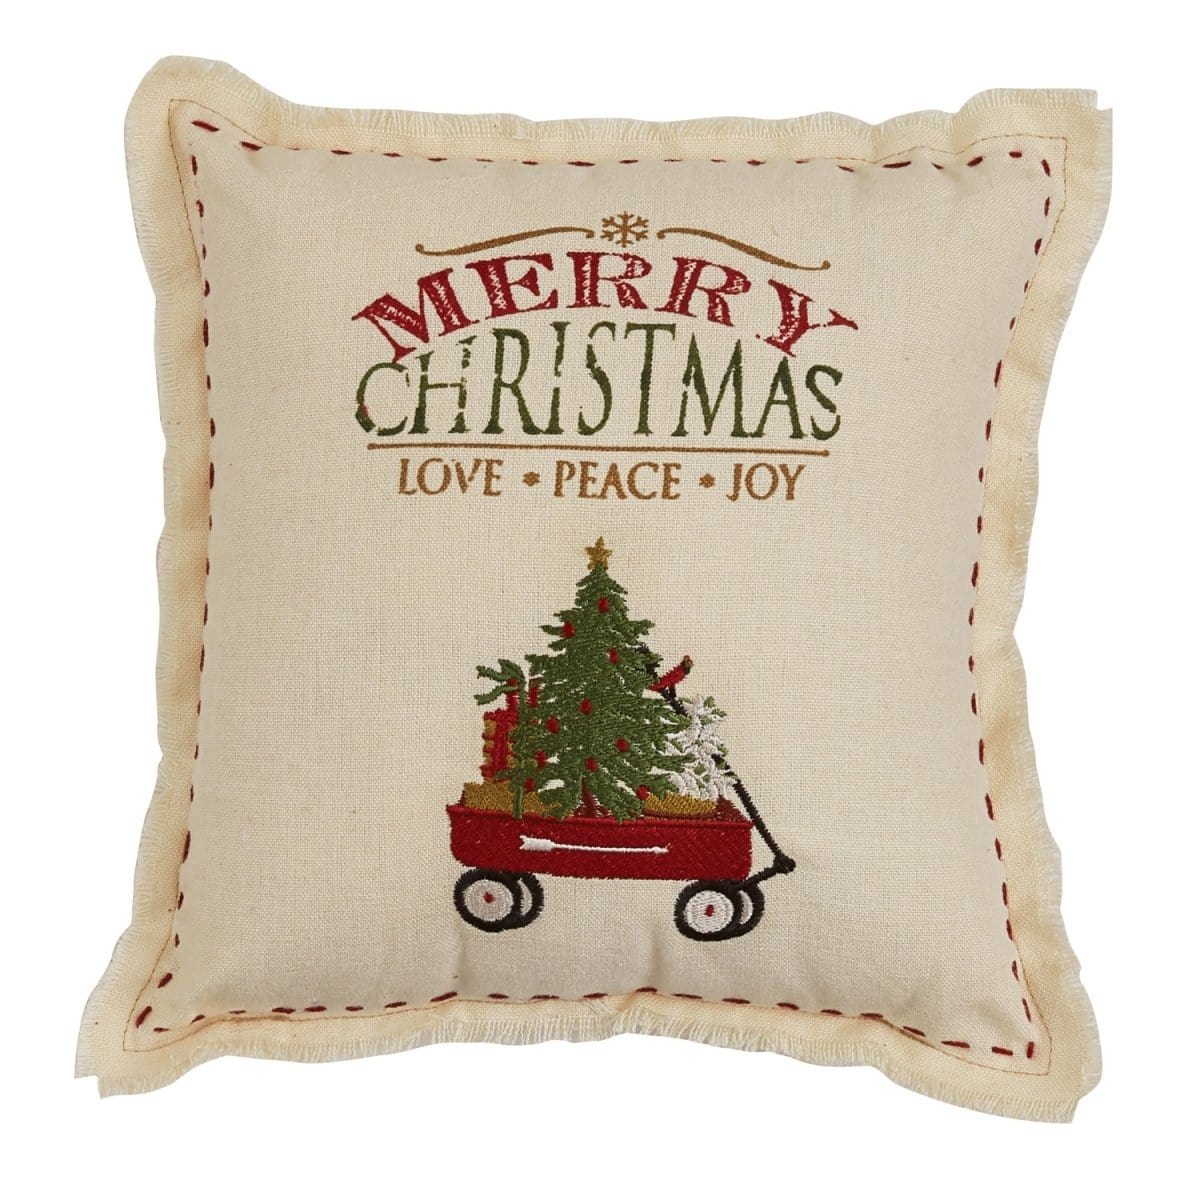 Merry Christmas pillow 10&quot; x 10&quot; Square-Park Designs-The Village Merchant